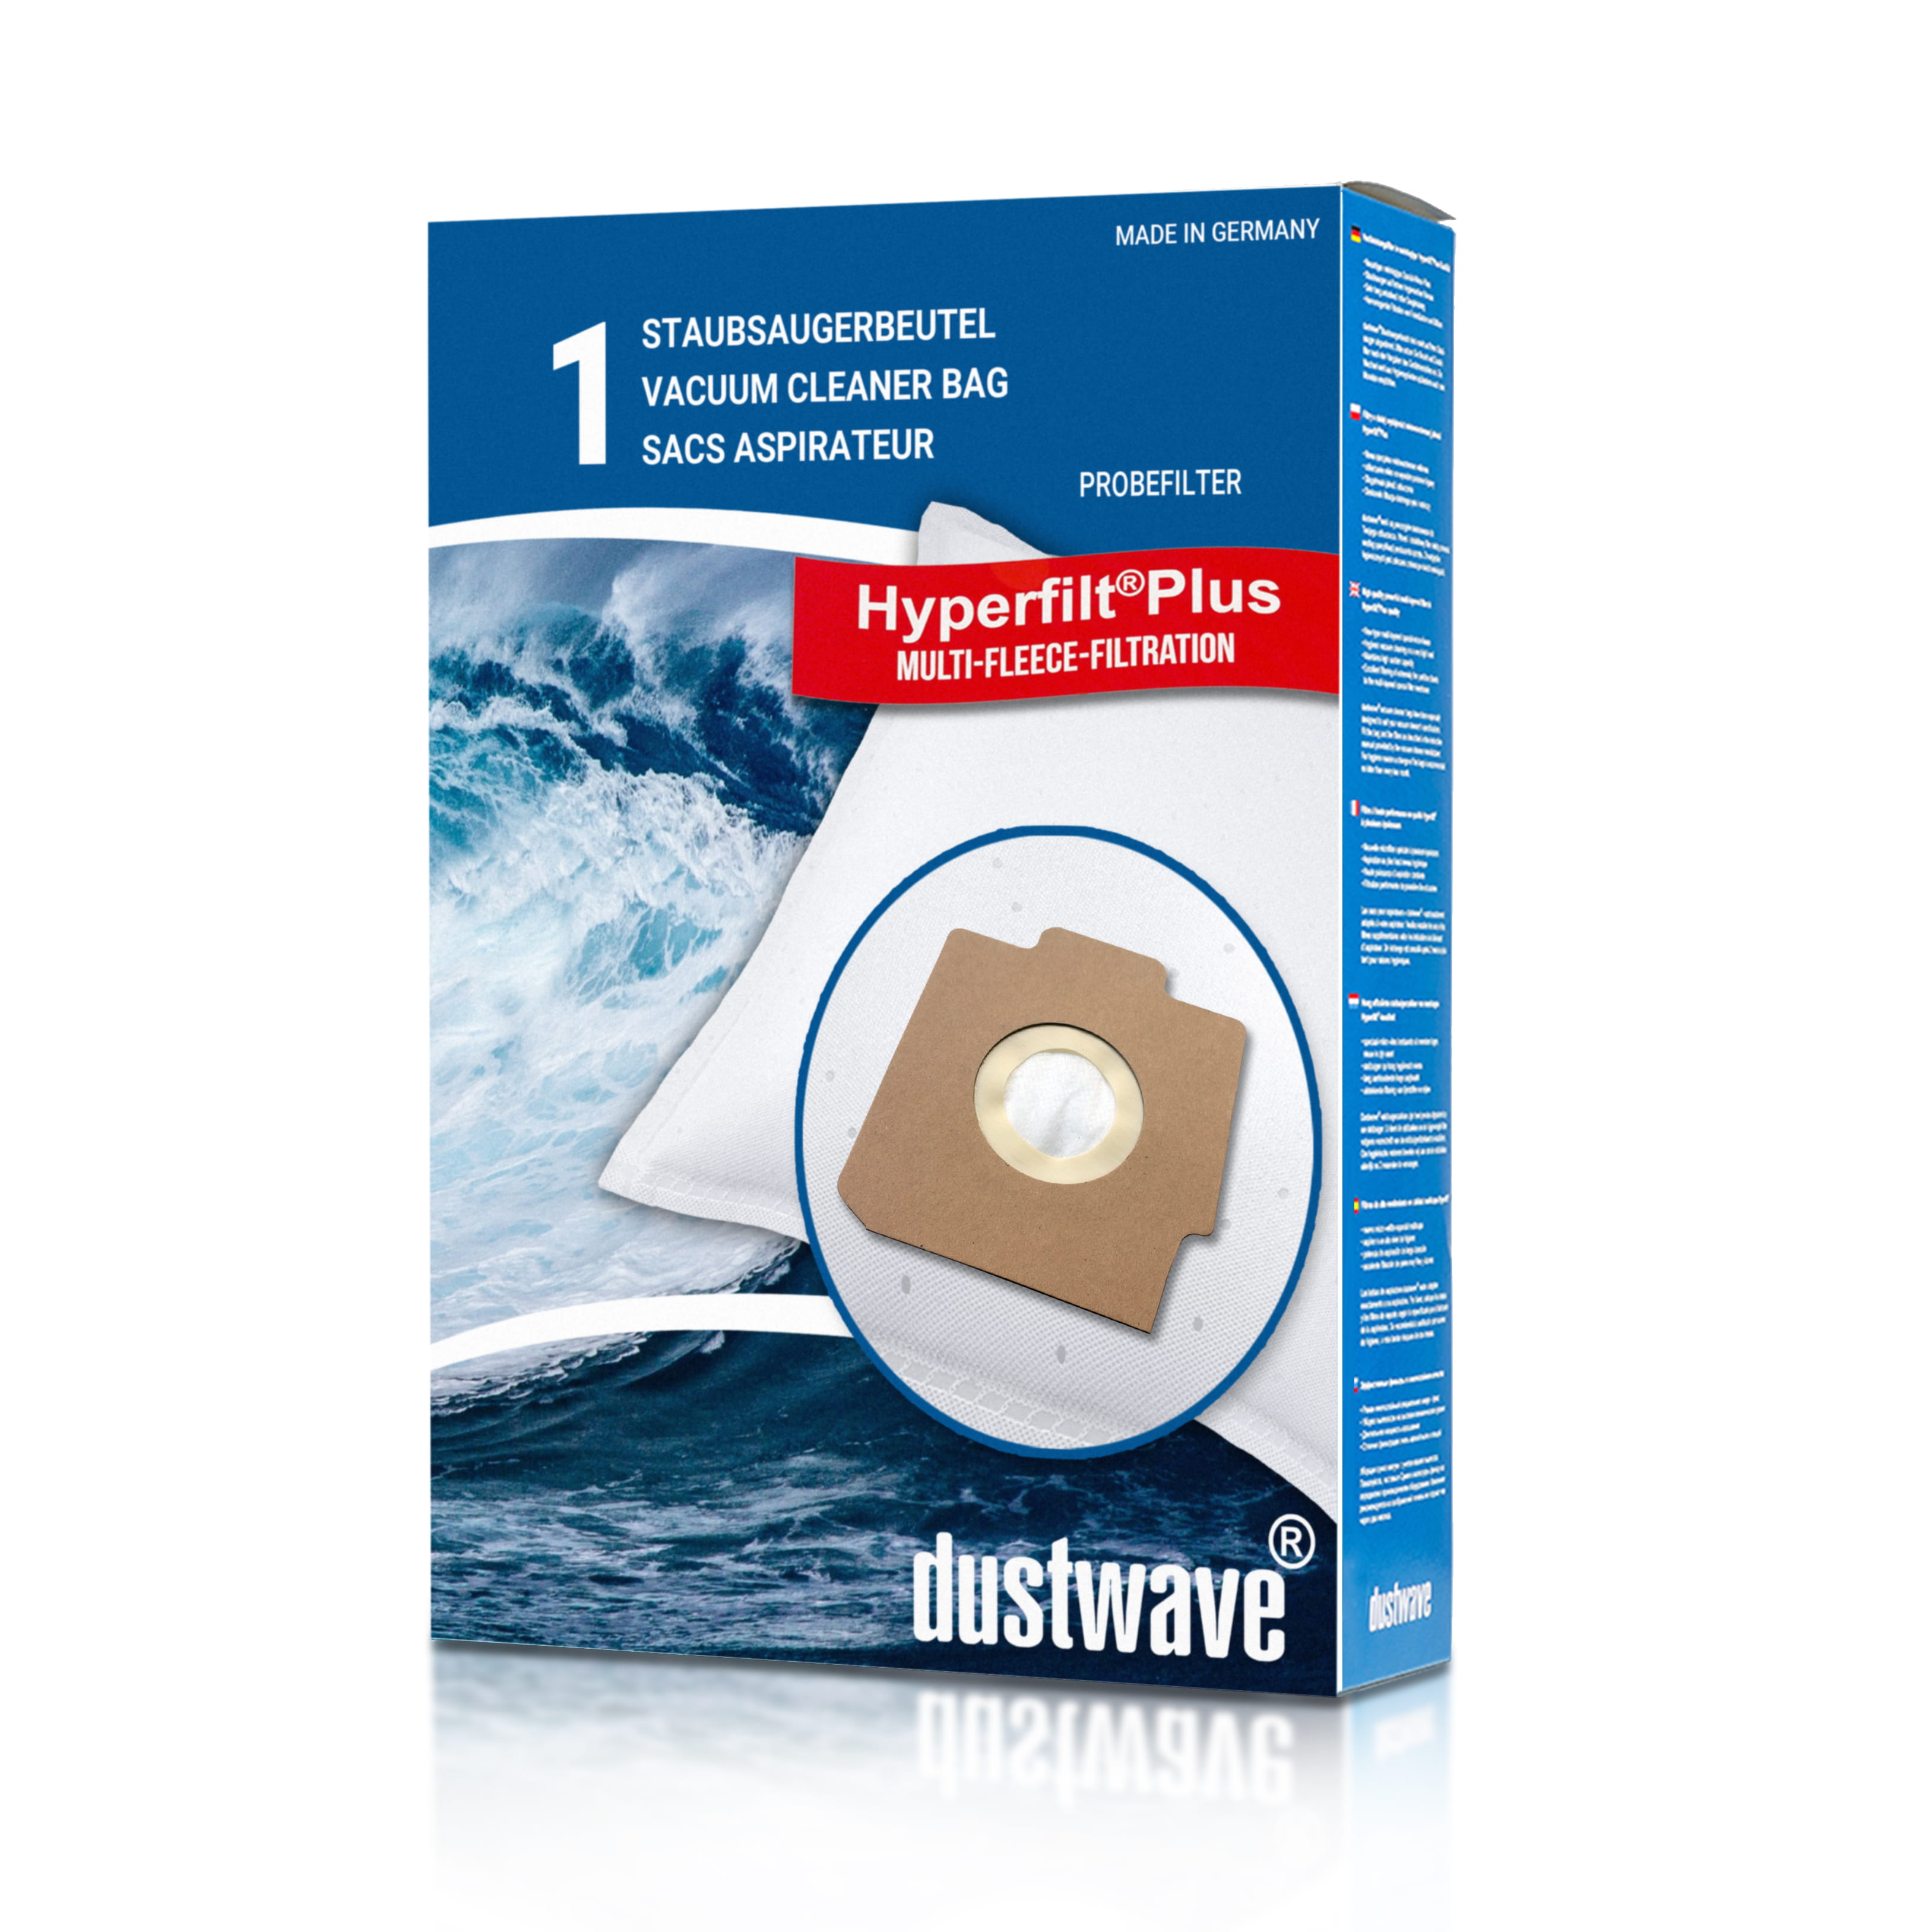 Dustwave® 1 Staubsaugerbeutel für AUDIO SC 060 - hocheffizient, mehrlagiges Mikrovlies mit Hygieneverschluss - Made in Germany